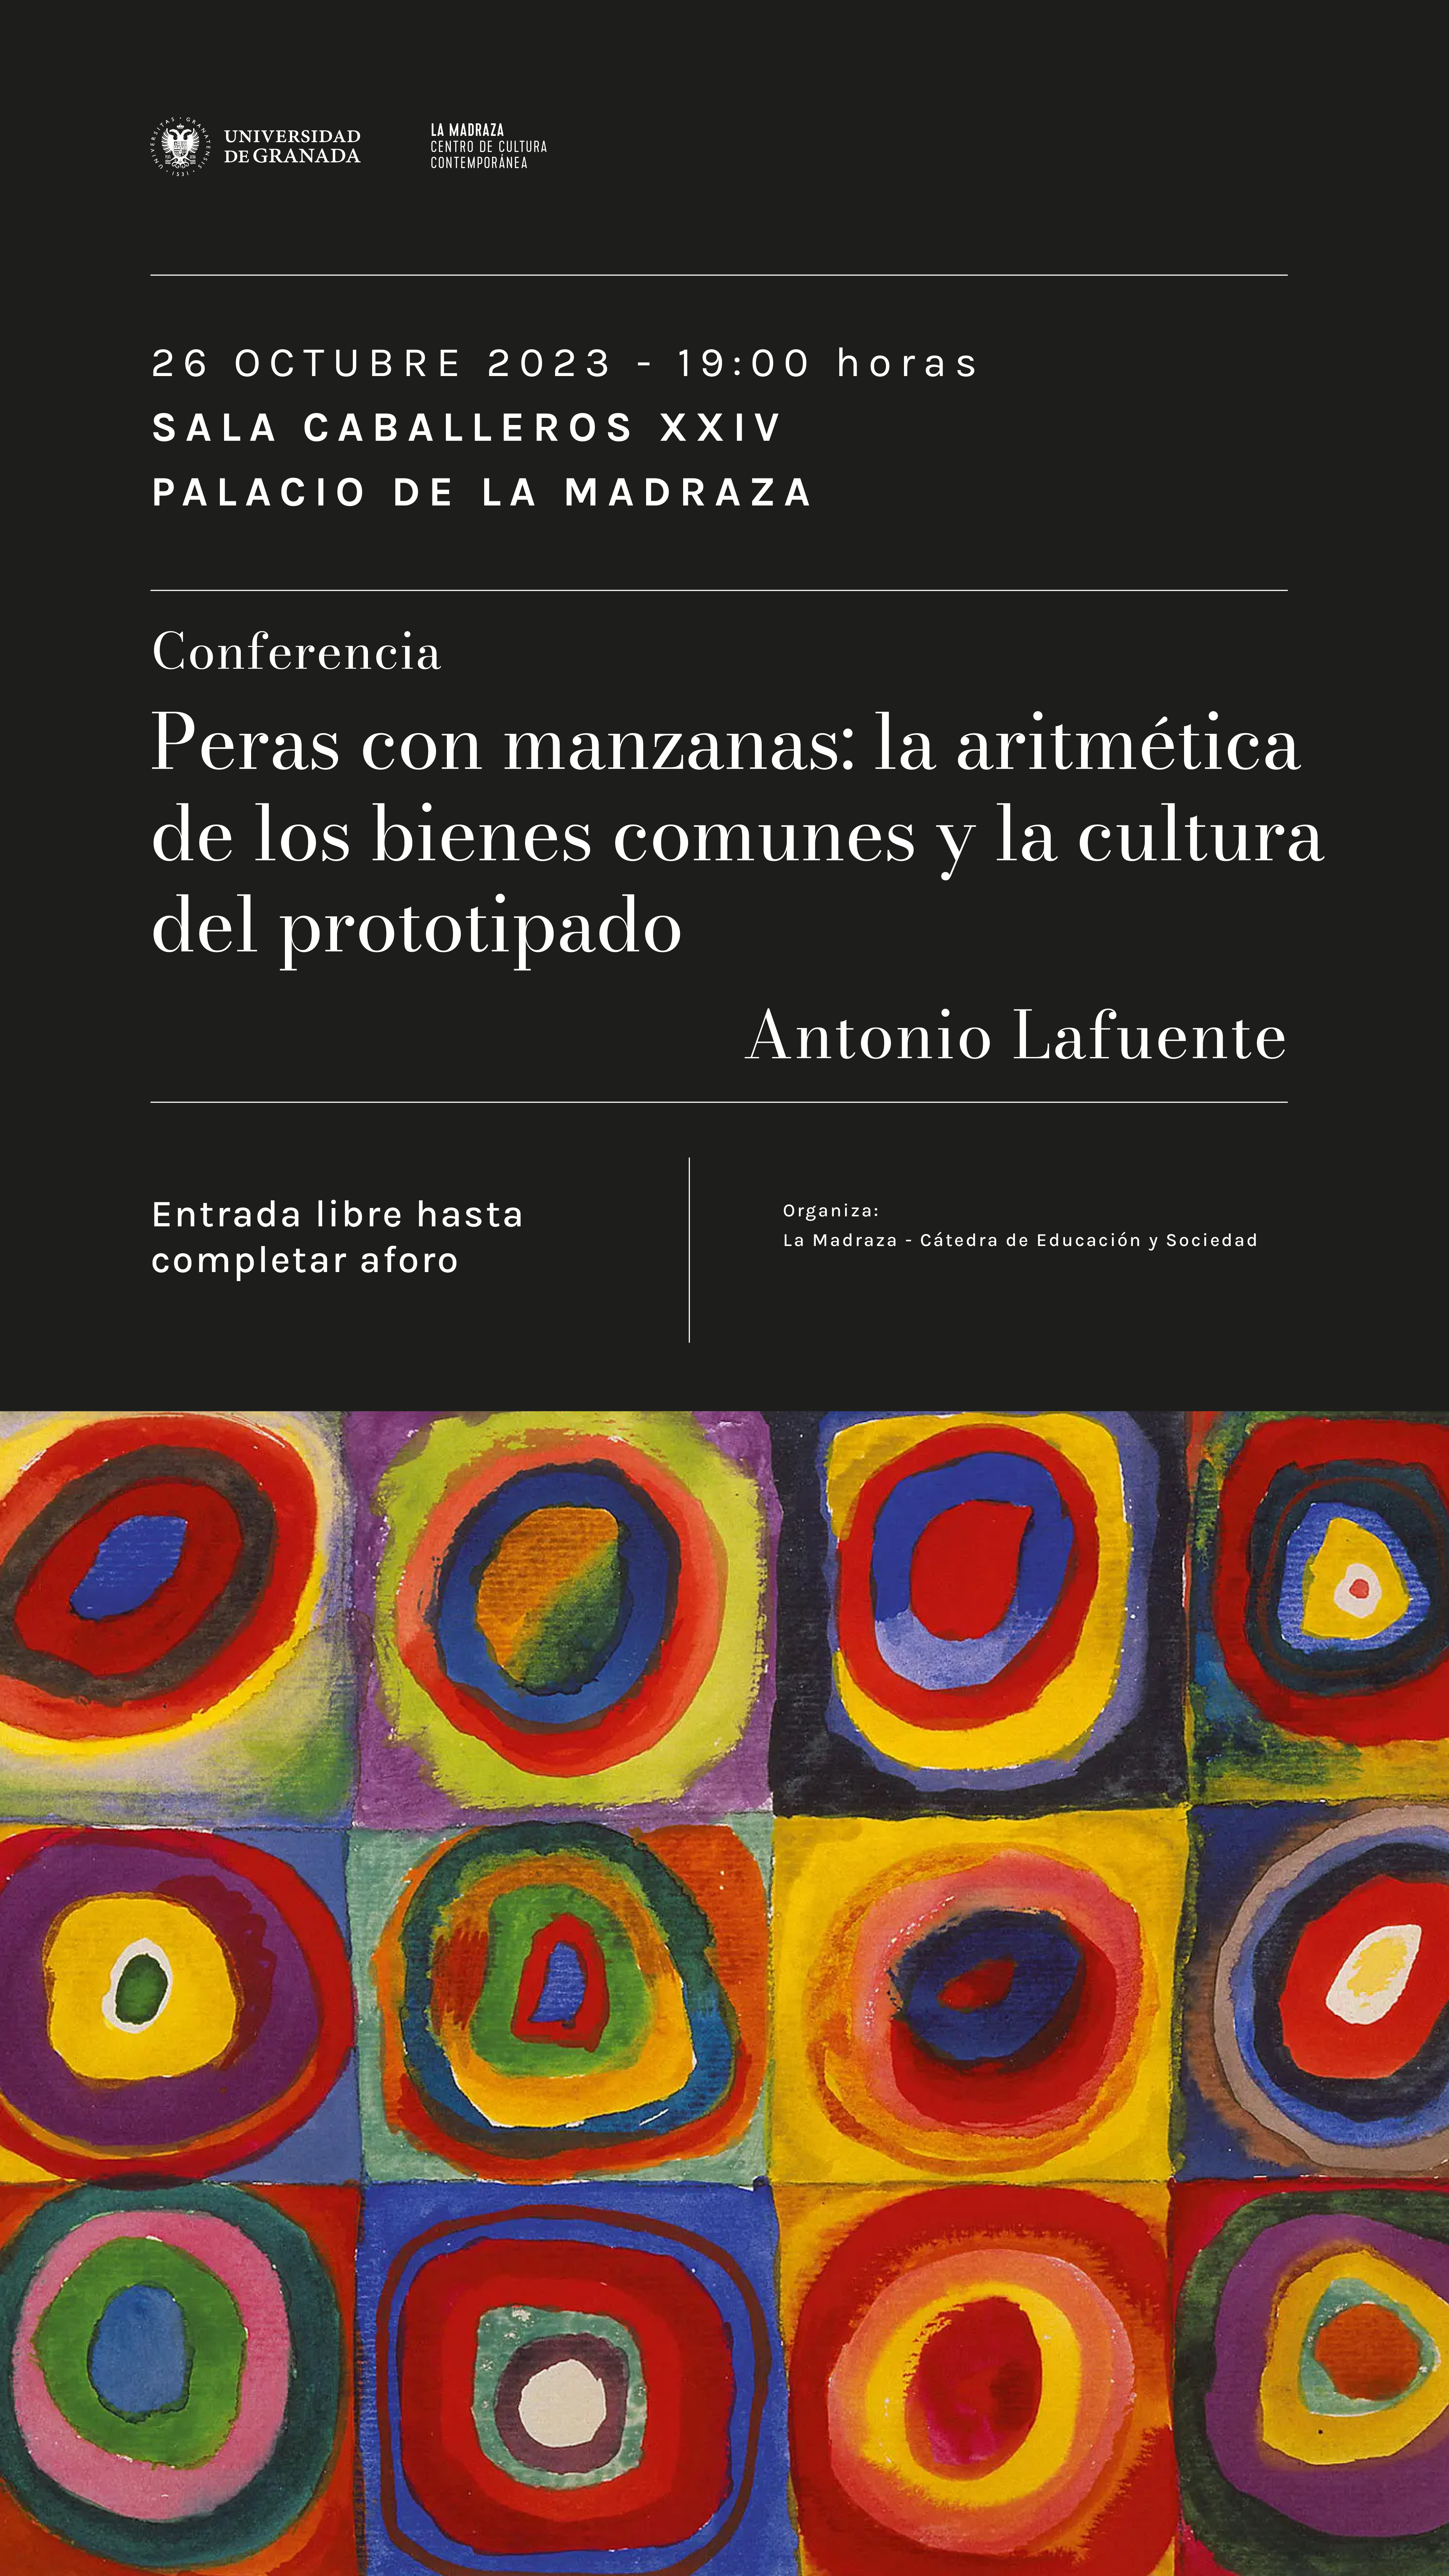 Inauguración del ciclo de conferencias de la cátedra con Antonio Lafuente